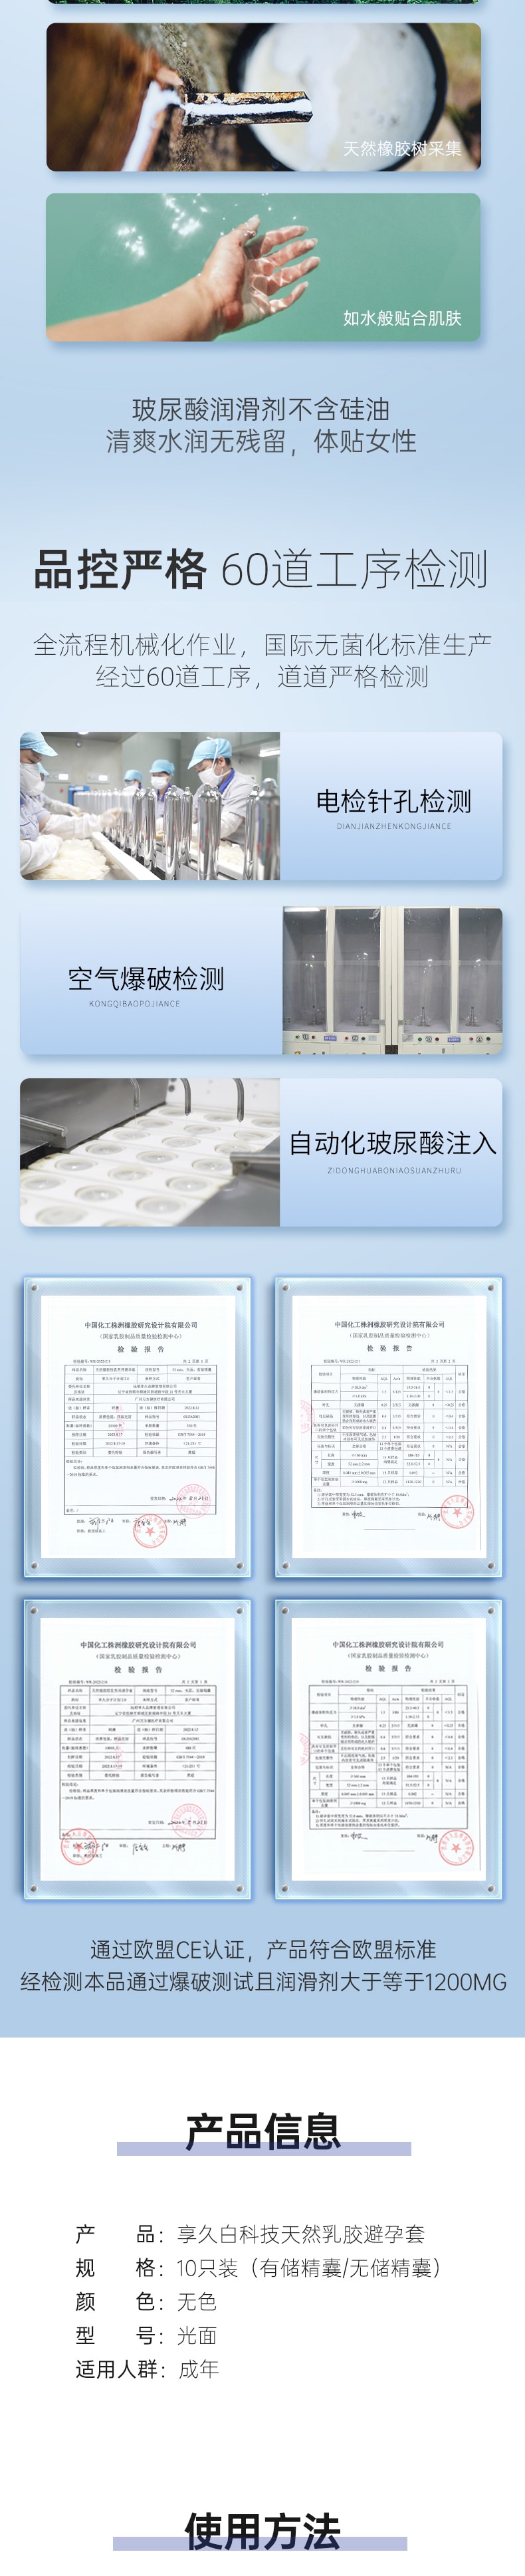 中國BLISSWATER享久白科技無儲精囊保險套超薄避孕套 1盒